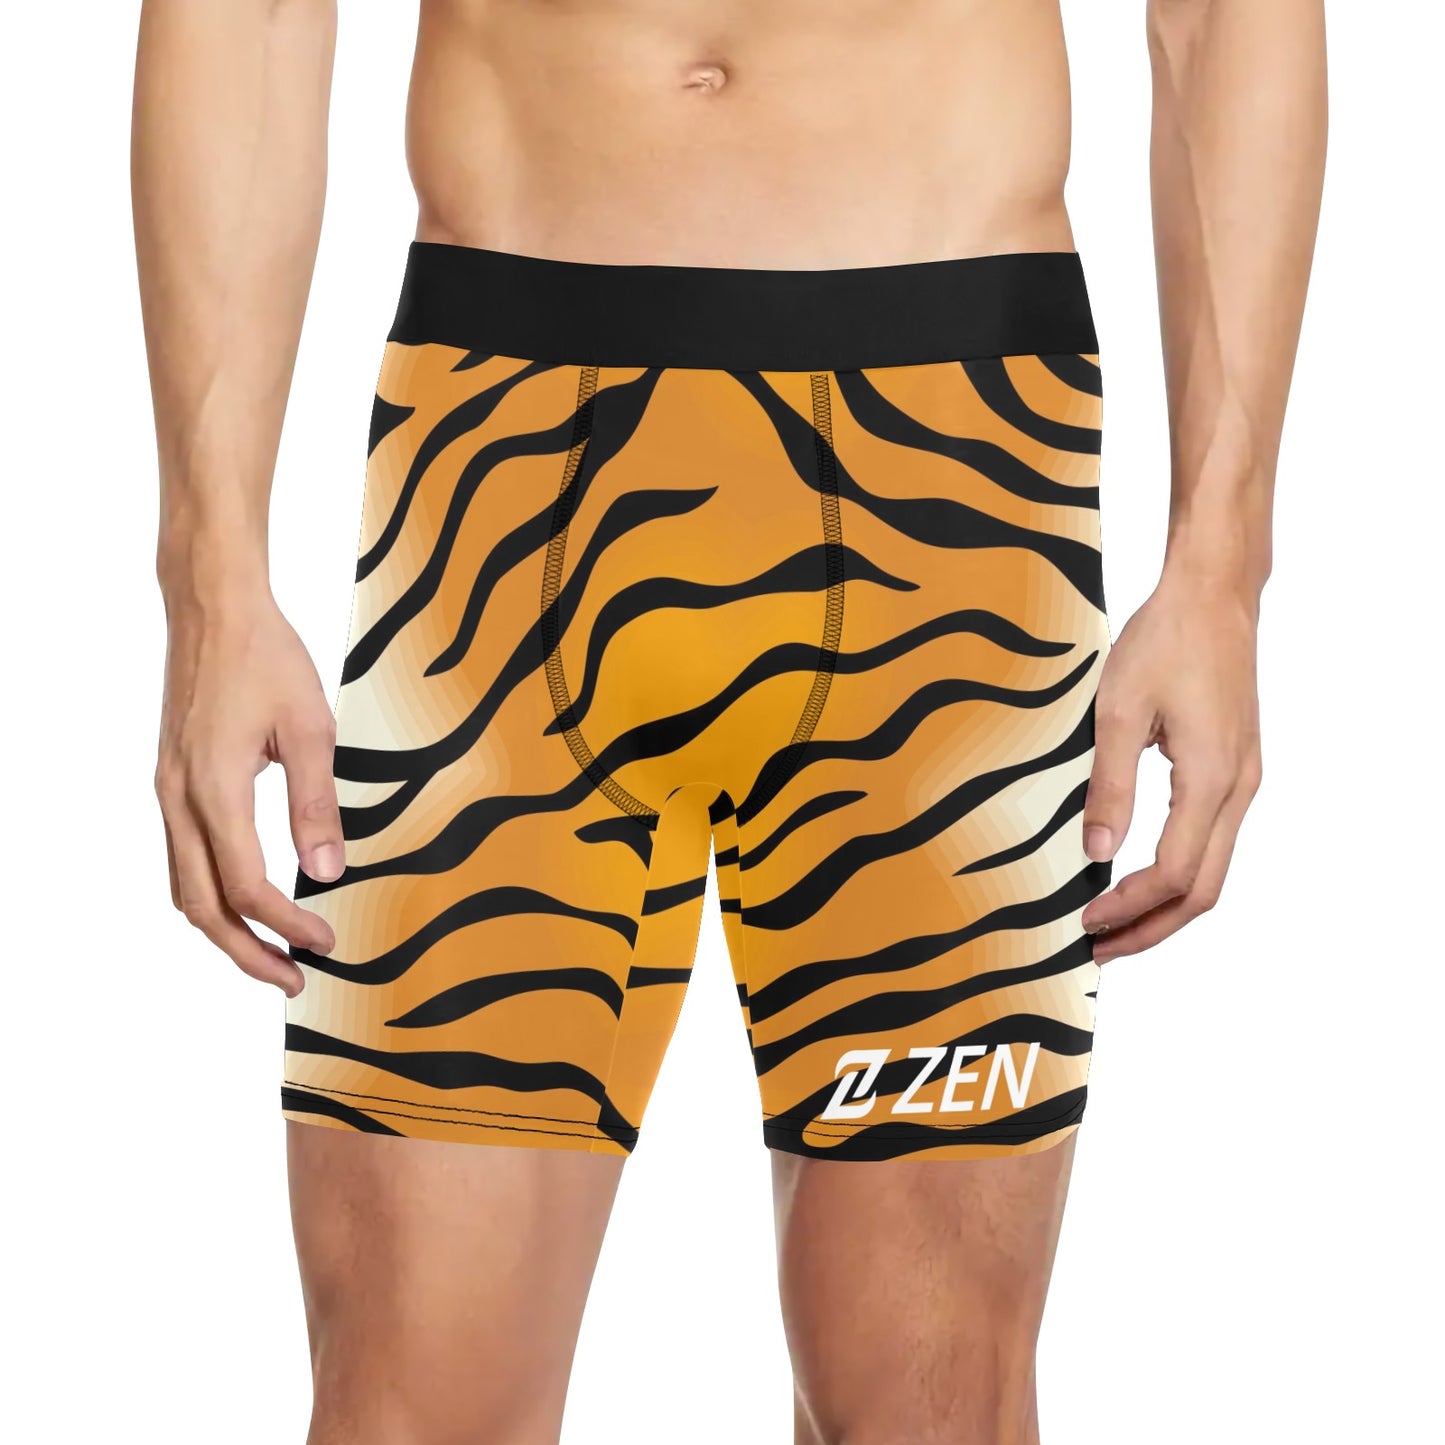 Zen Boxers Long - Tiger Stripes